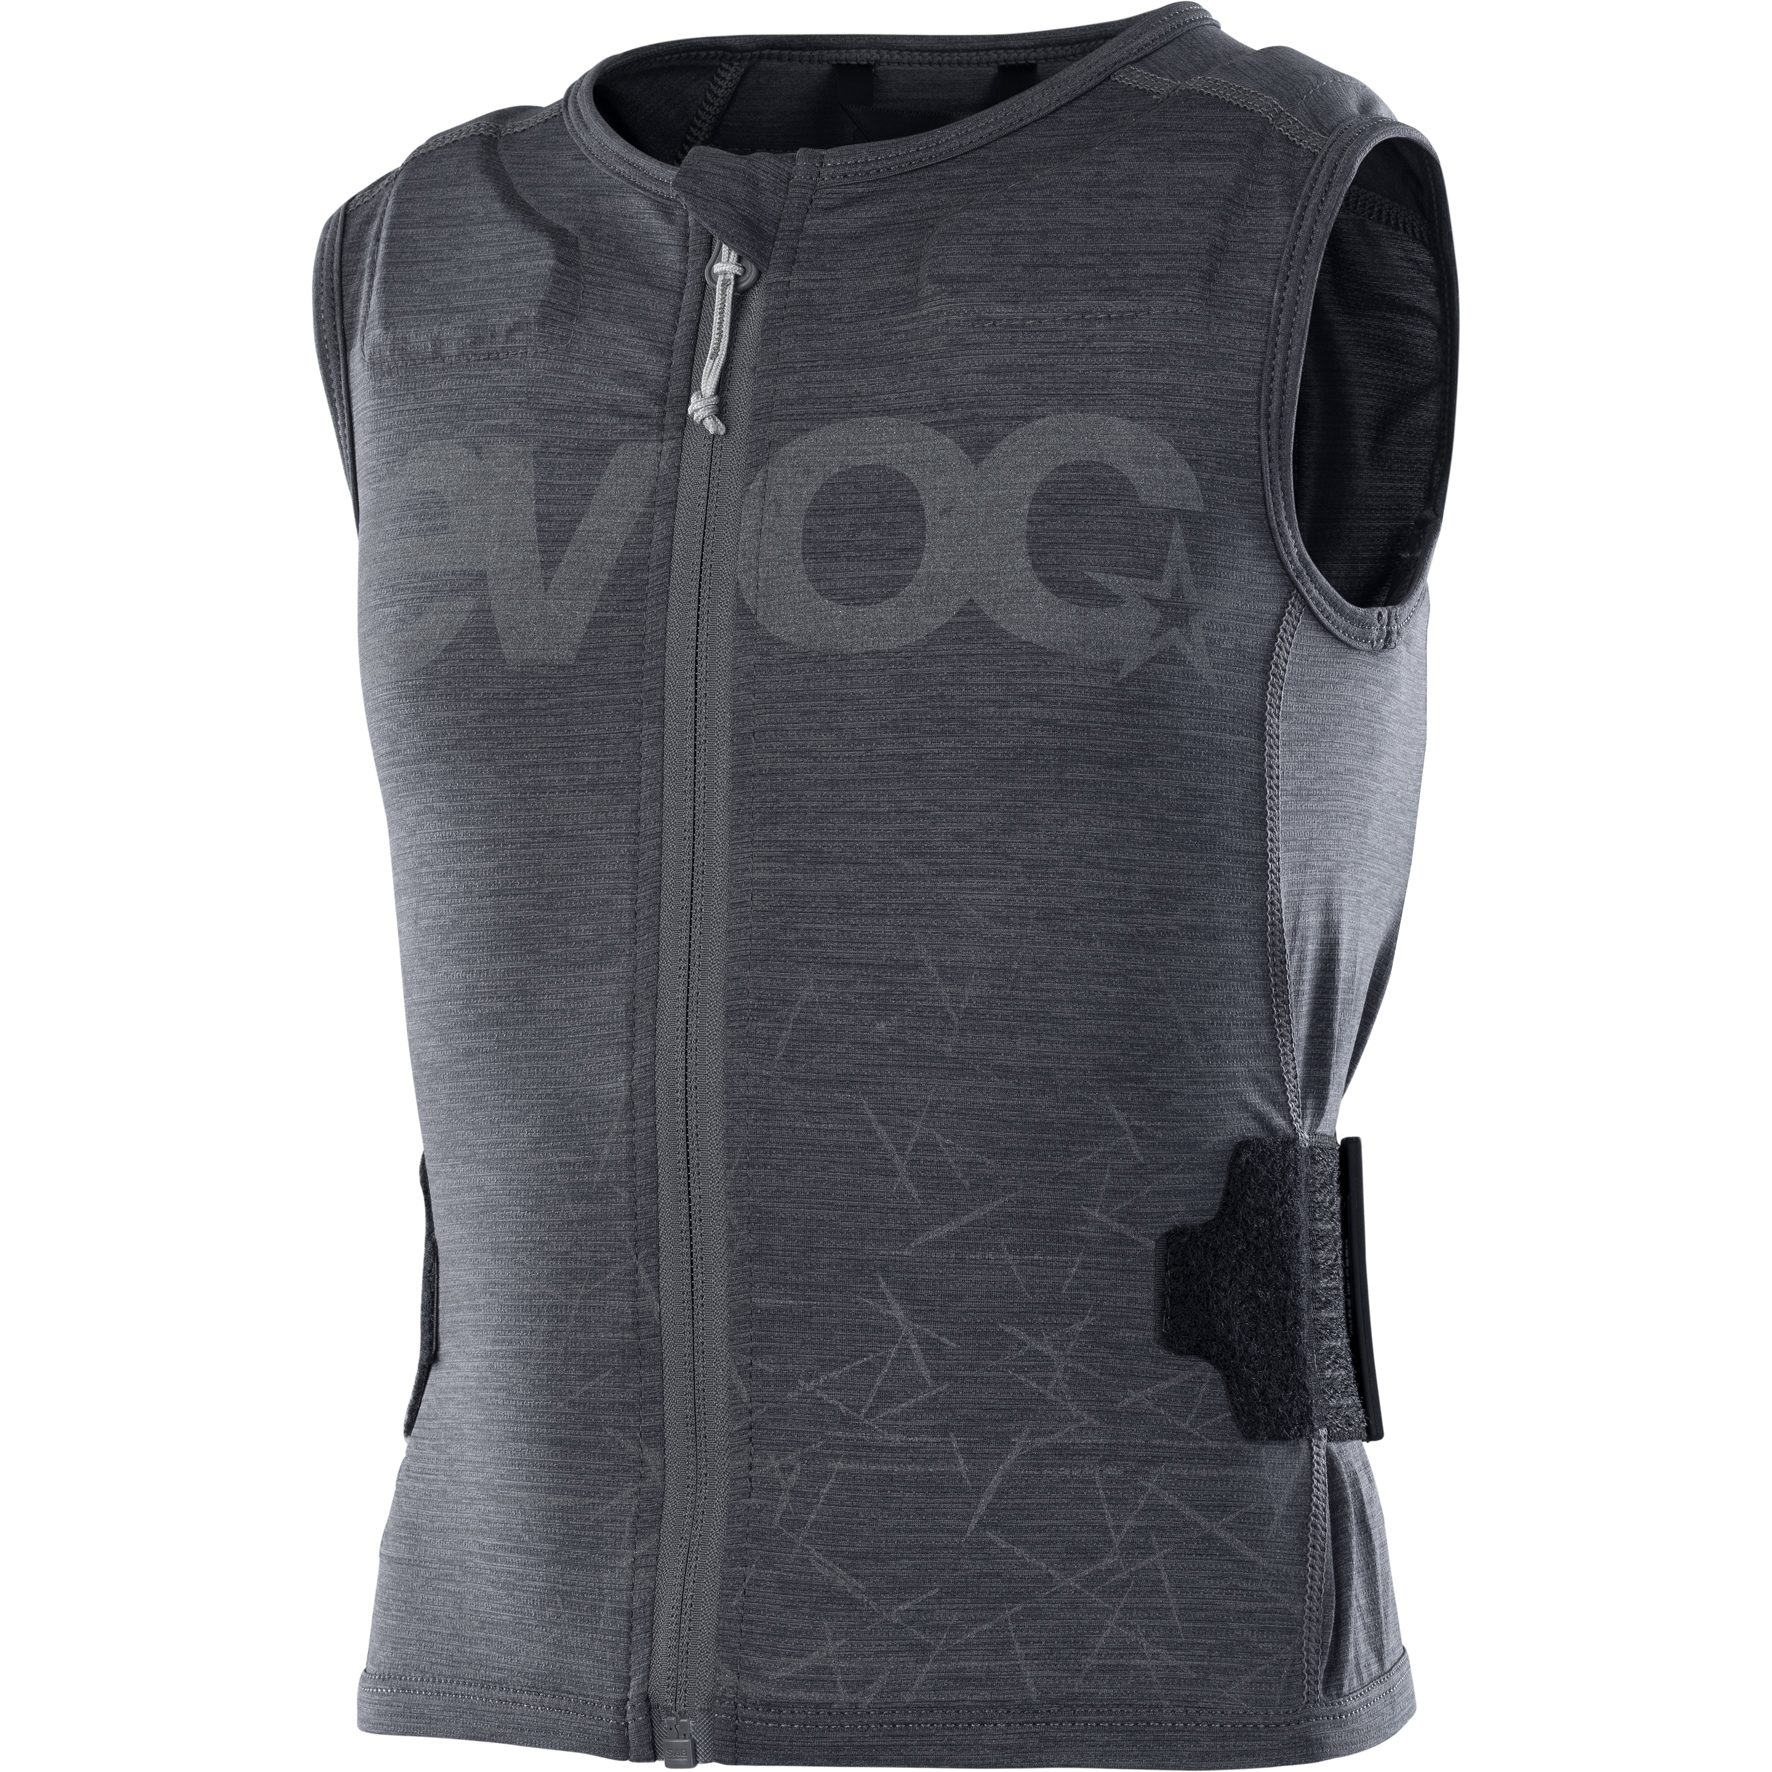 Image of EVOC Protector Vest Kids - Carbon Grey